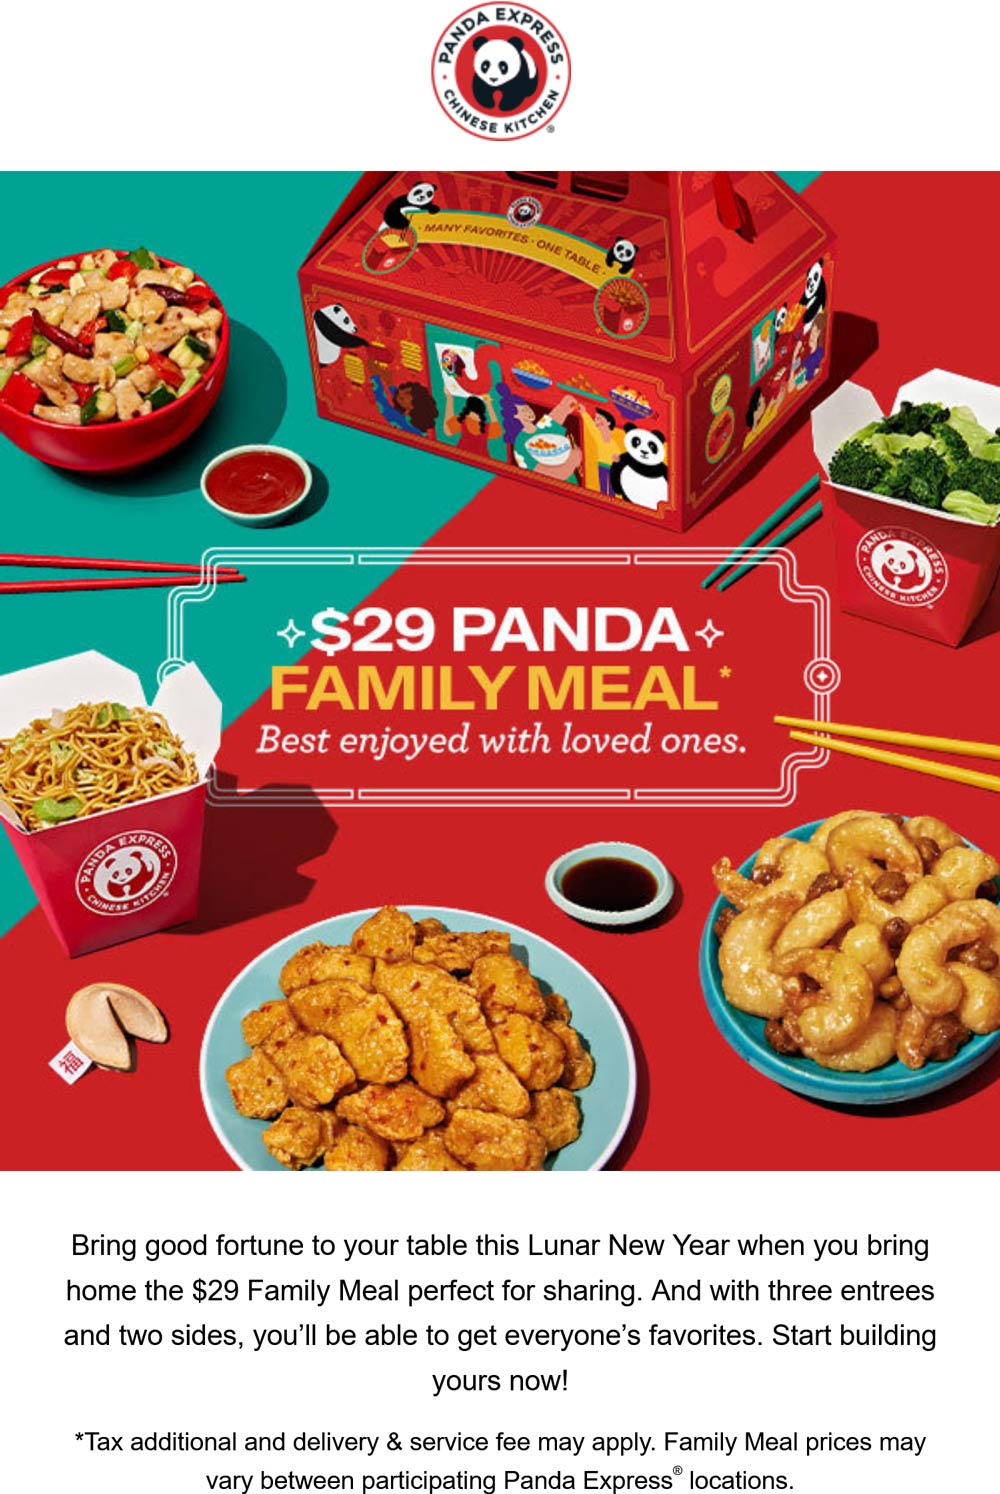 Panda Express restaurants Coupon  $29 family meal at Panda Express #pandaexpress 